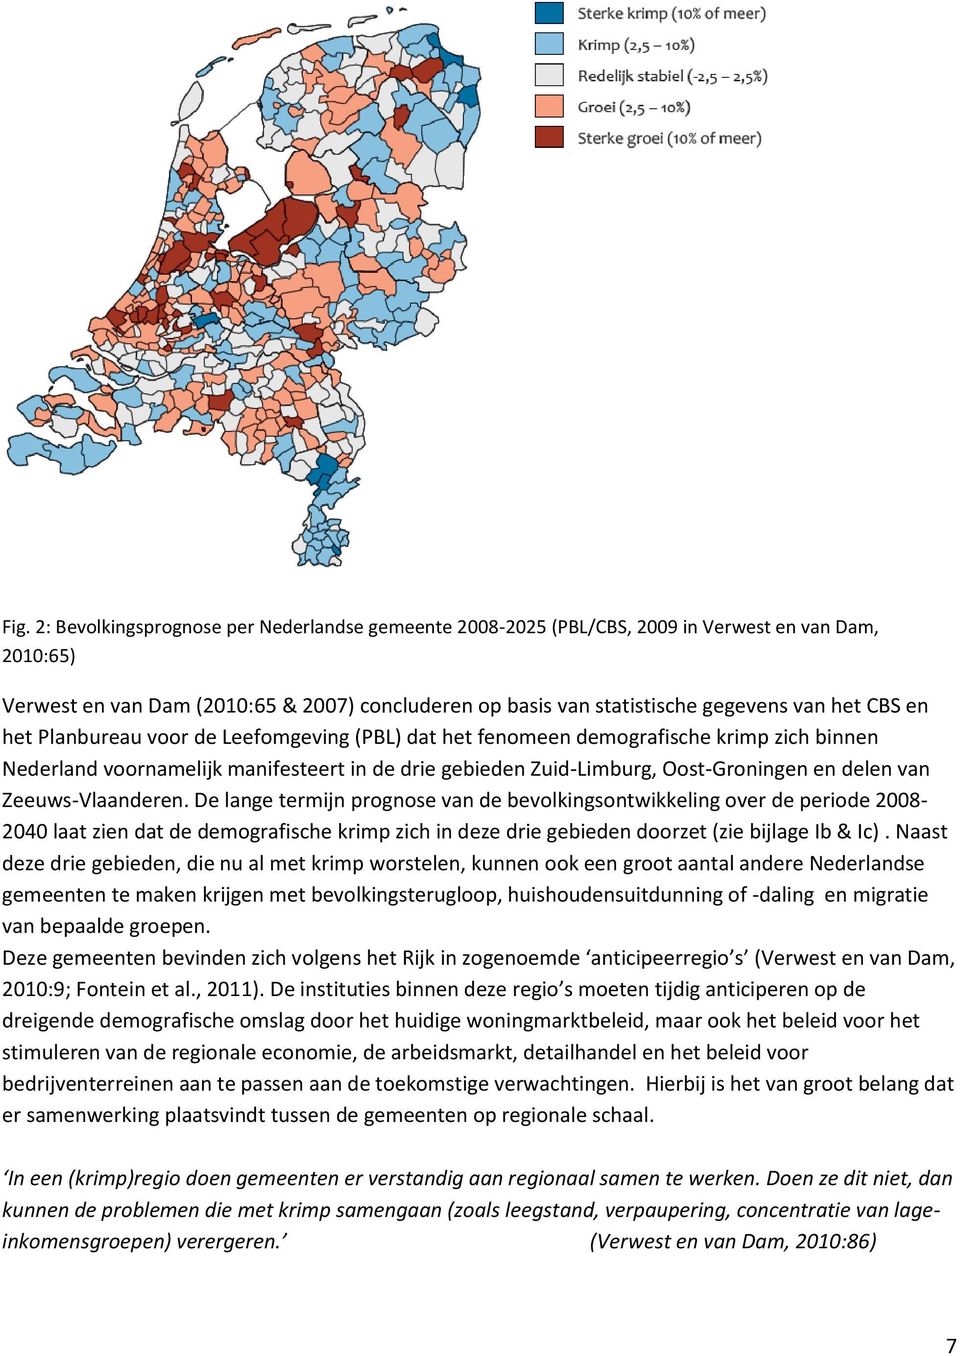 Zeeuws-Vlaanderen. De lange termijn prognose van de bevolkingsontwikkeling over de periode 2008-2040 laat zien dat de demografische krimp zich in deze drie gebieden doorzet (zie bijlage Ib & Ic).